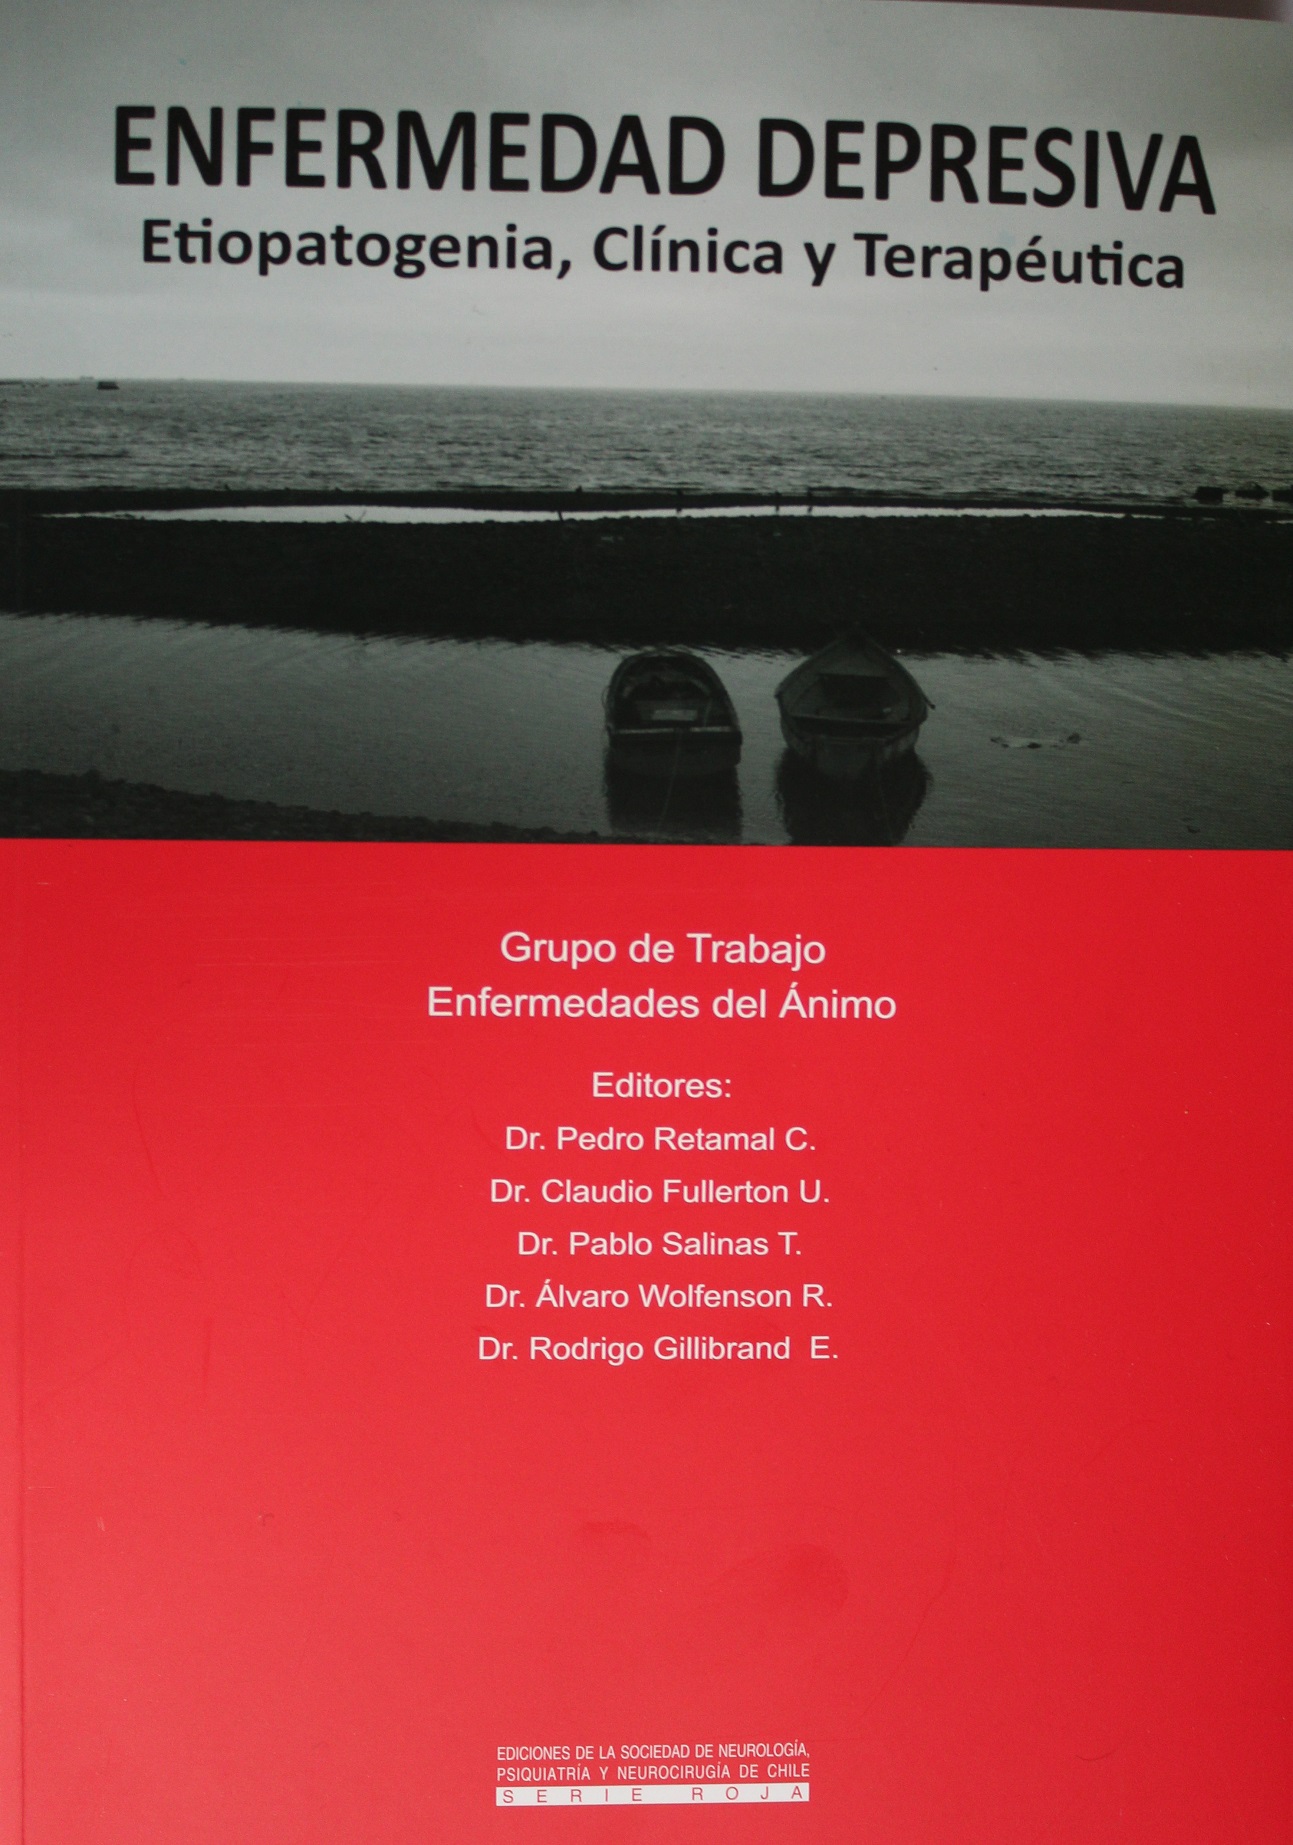 Dr. Pedro Retamal publica nuevo libro sobre Depresión